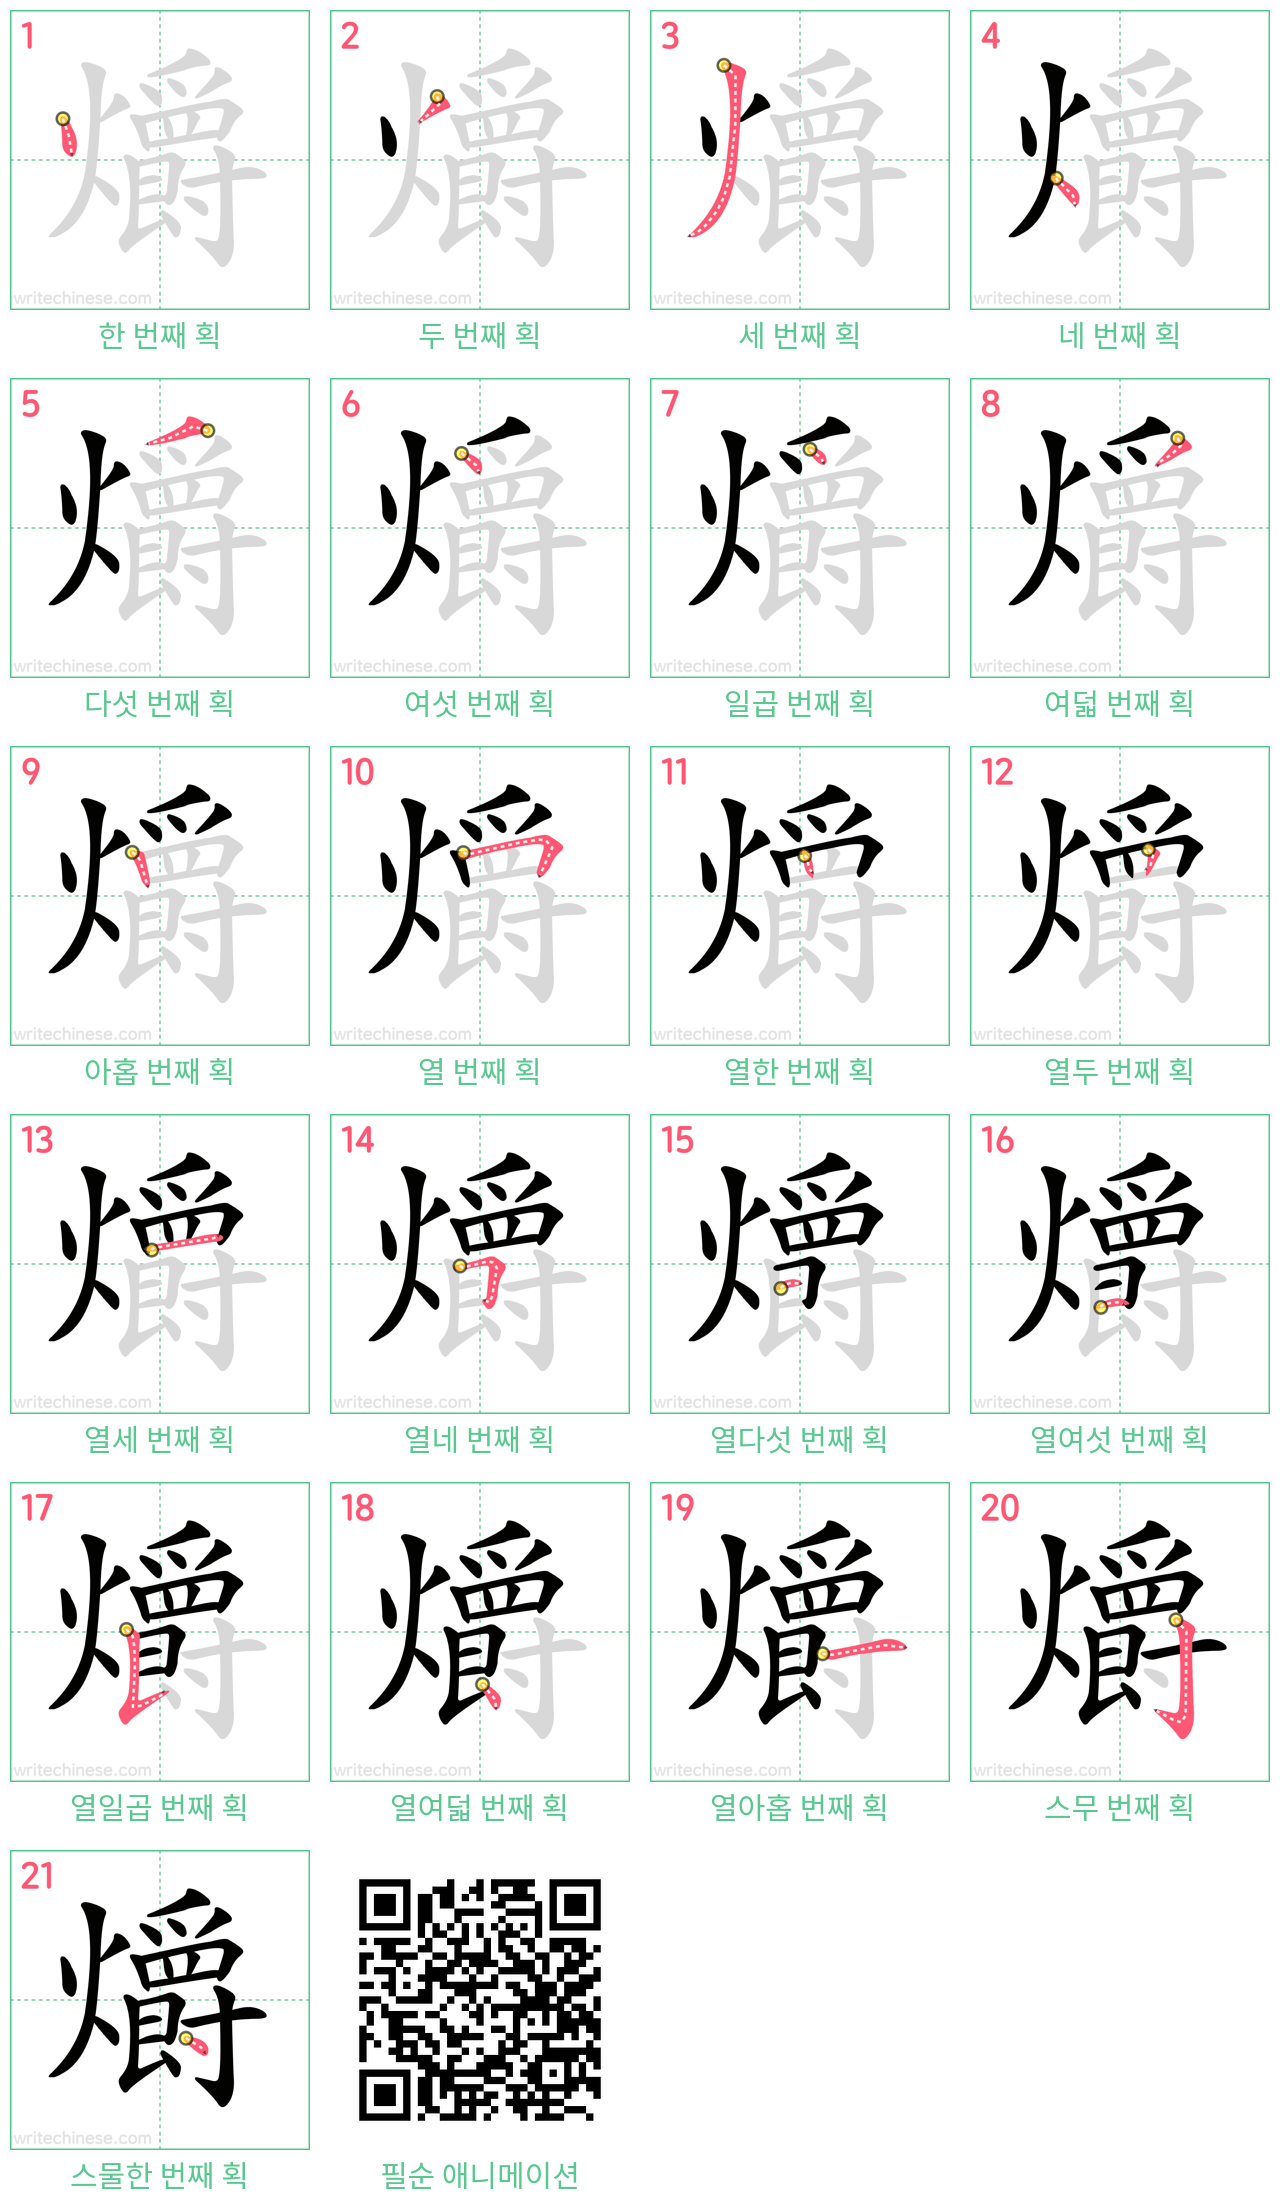 爝 step-by-step stroke order diagrams